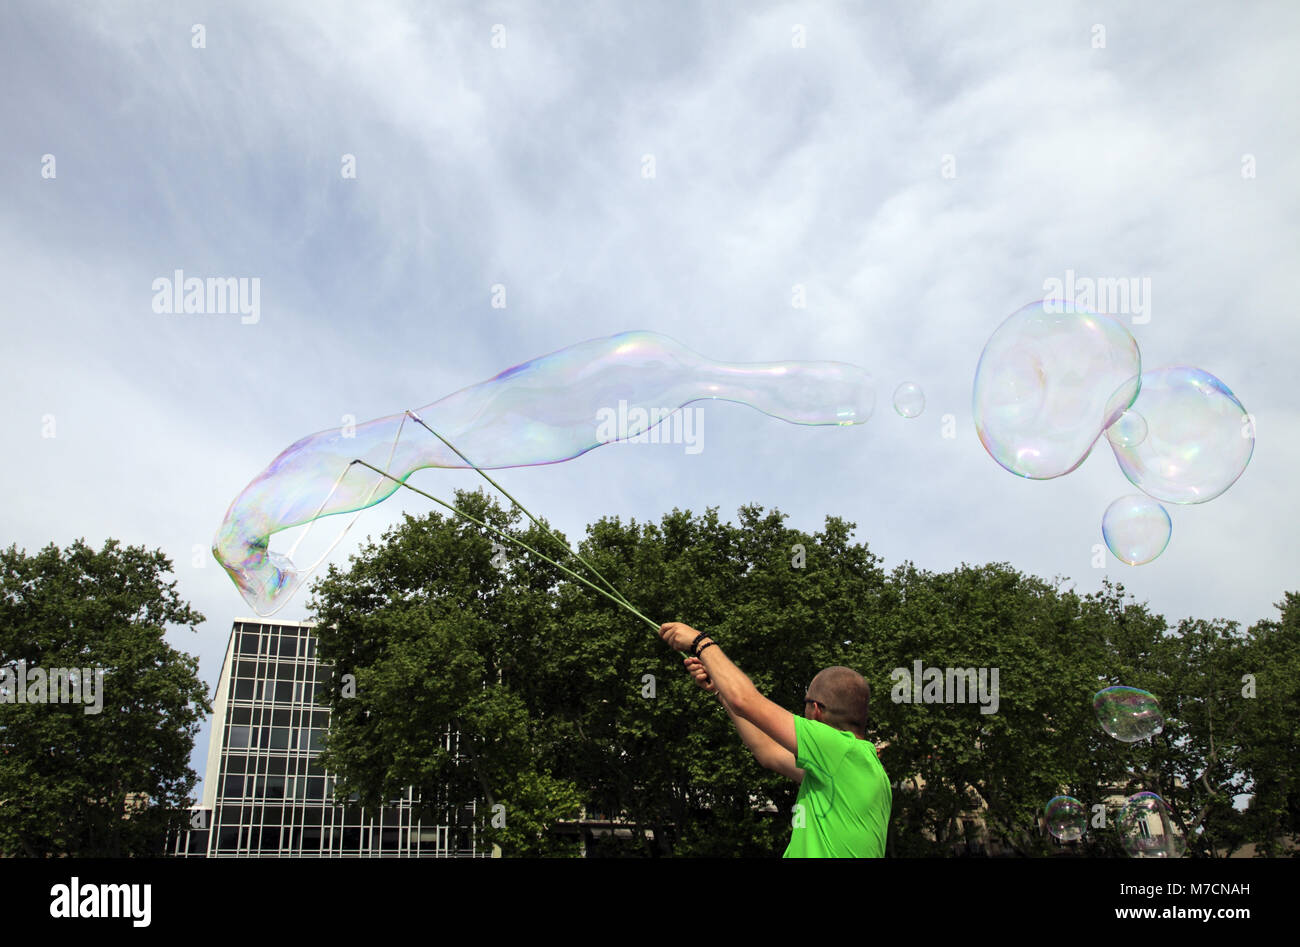 Touriste faisant des bulles géantes Polonais sur la Place de la Comédie pour gagner un peu d'Argent. Montpellier. F34 Stockfoto